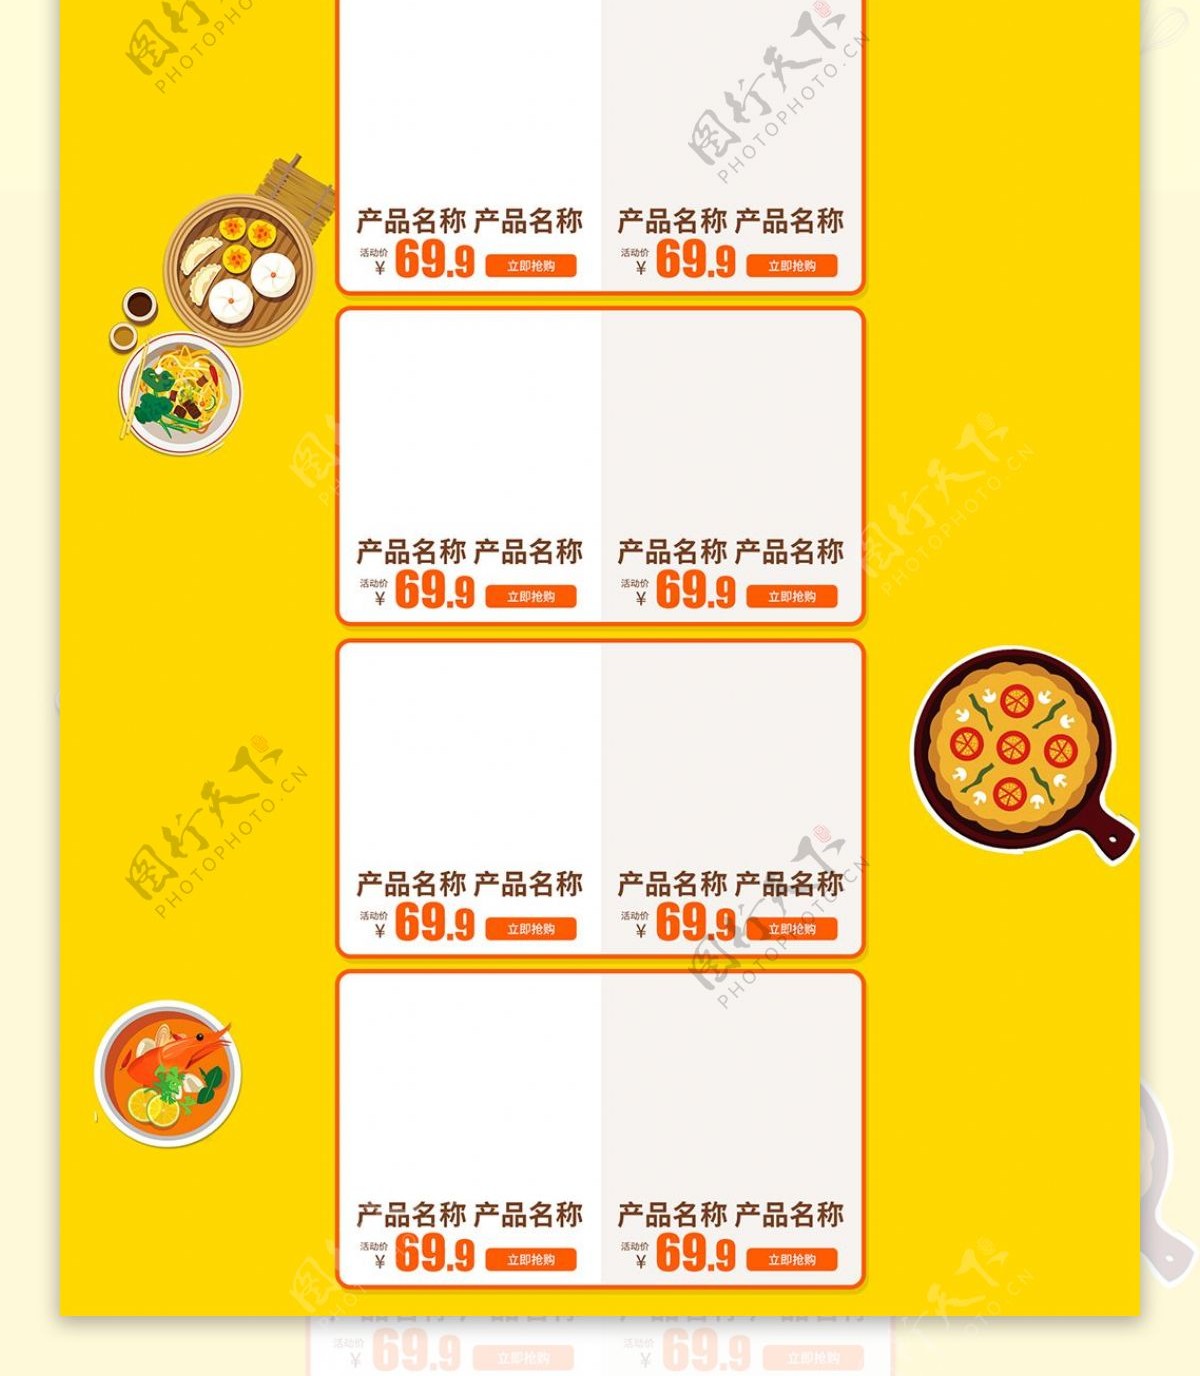 电商淘宝517吃货节促销黄色卡通首页模板